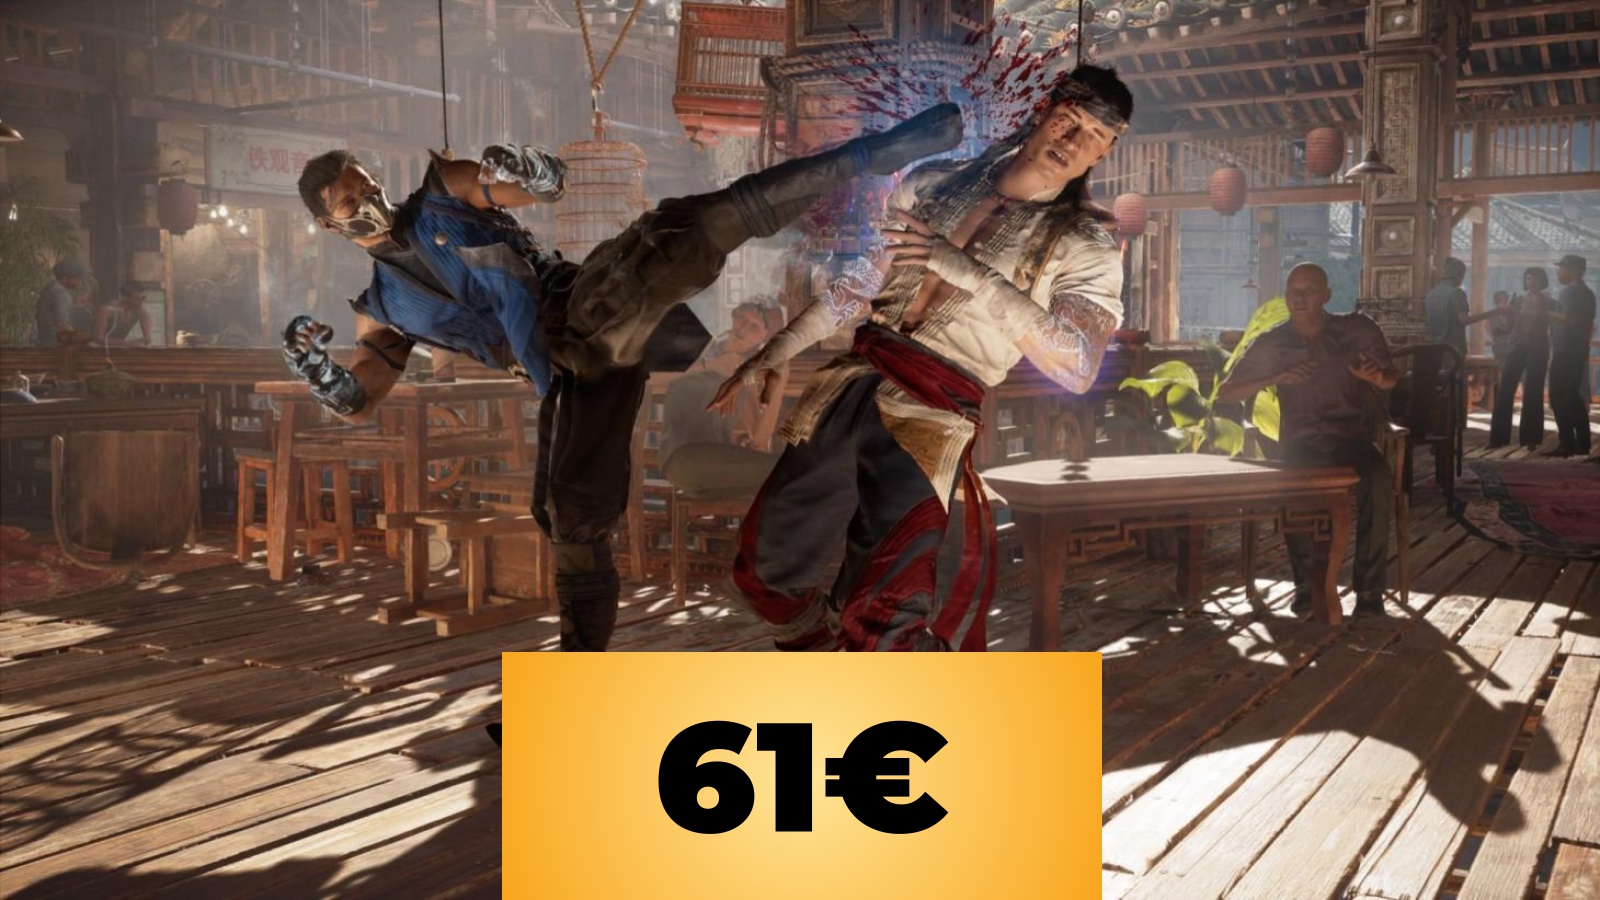 Mortal Kombat 1 in versione PS5 è ora in sconto su Amazon Italia, poco dopo l'uscita